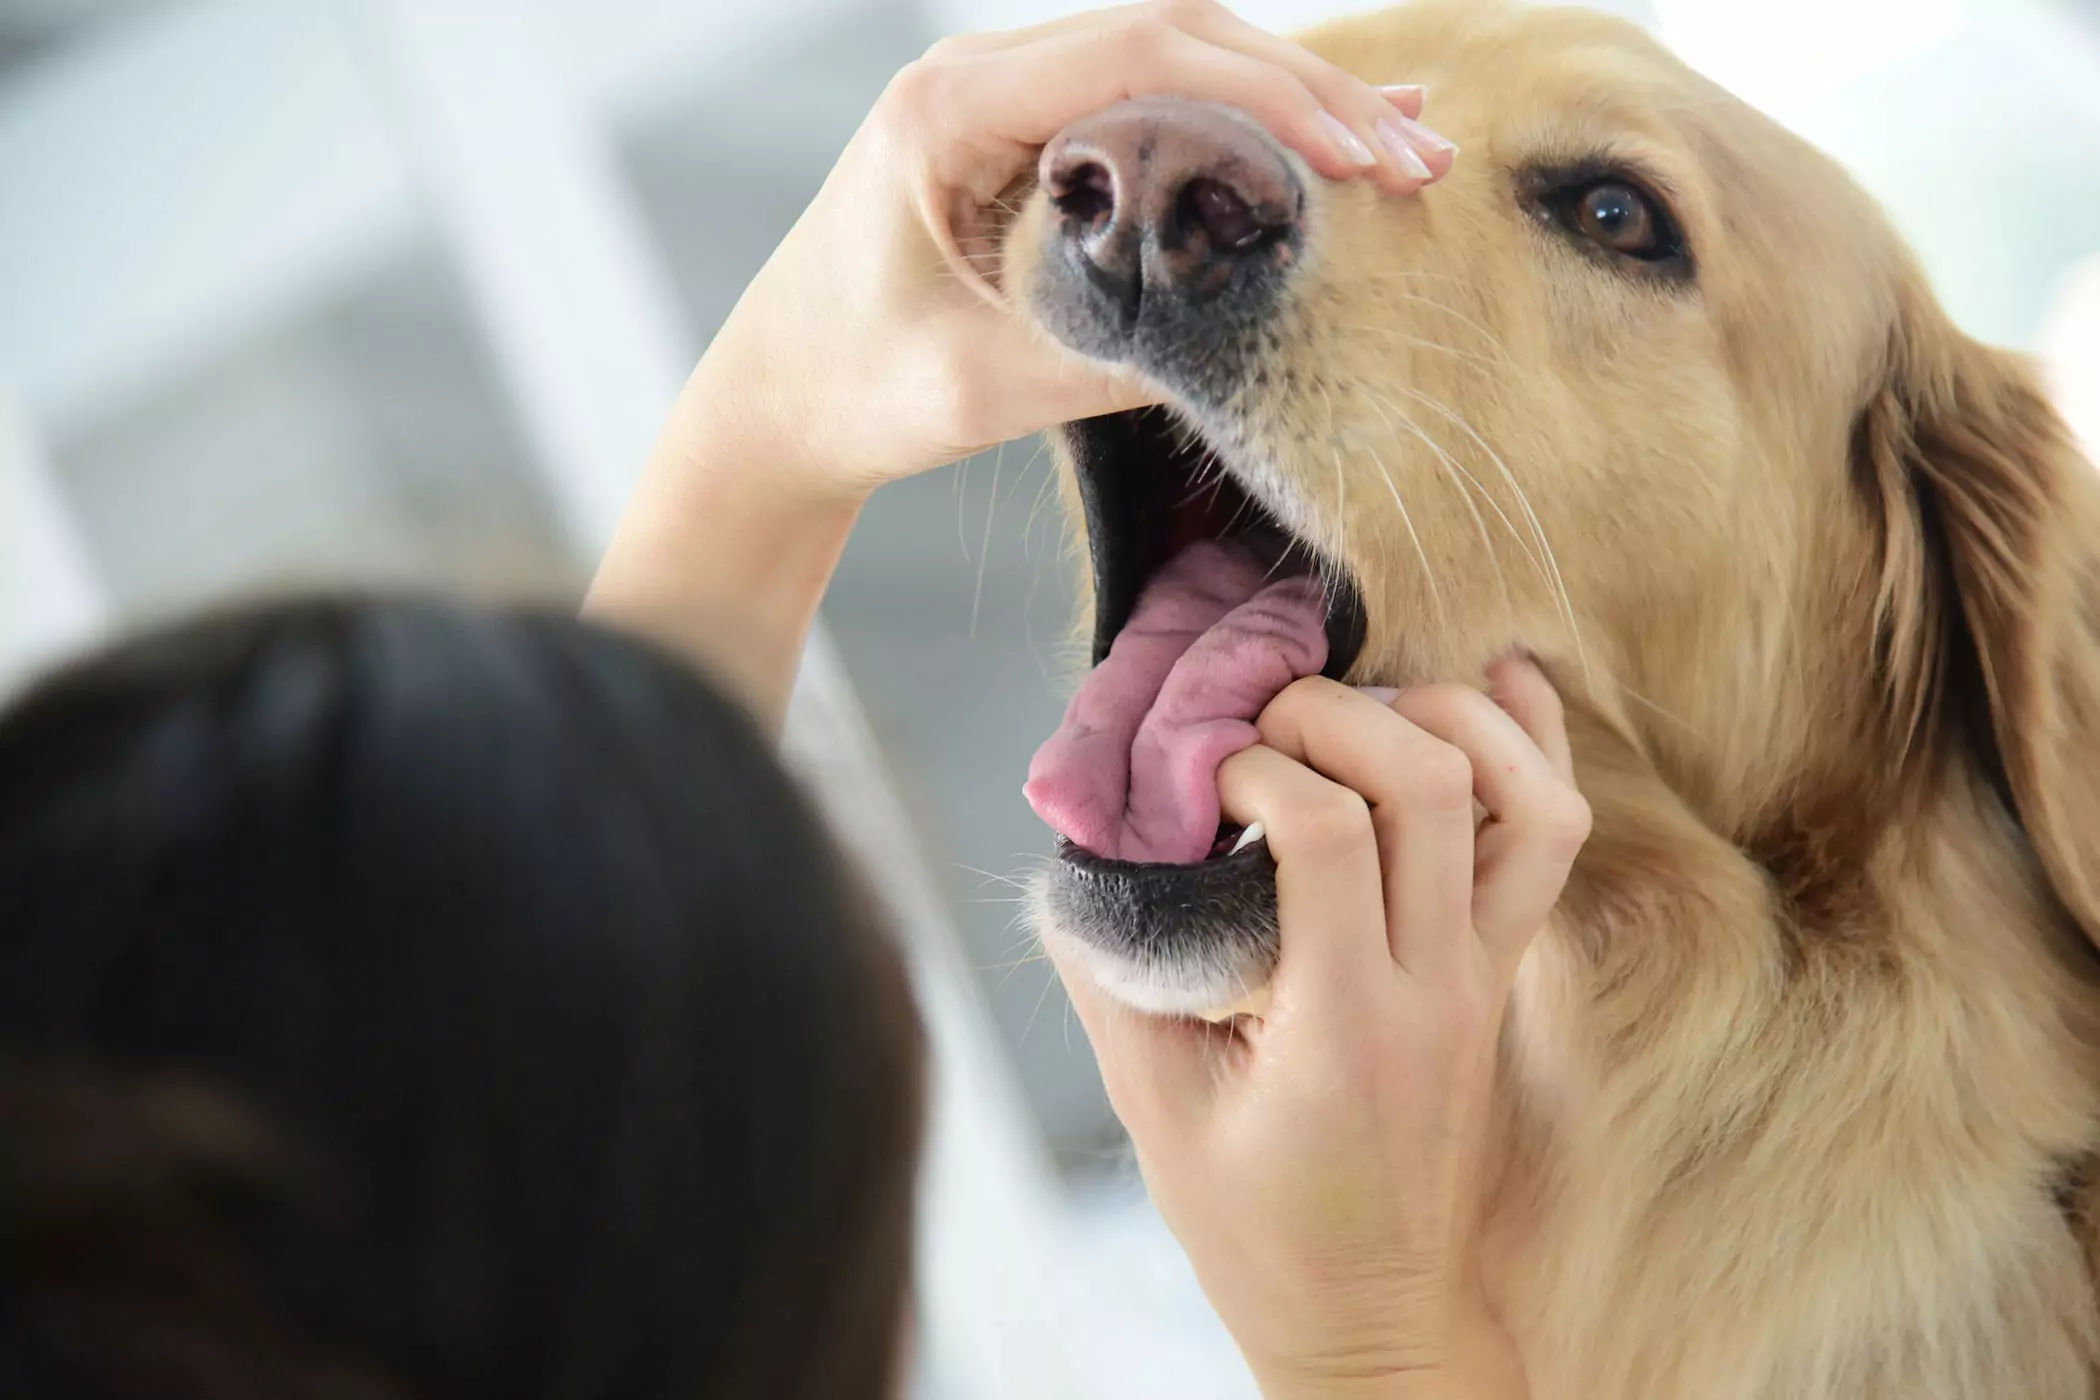 La bocca di un cane è più pulita di quella di un umano? La bocca di un cane è più pulita di quella di un umano? Questo è un concetto rubato, le due cose non sono paragonabili.